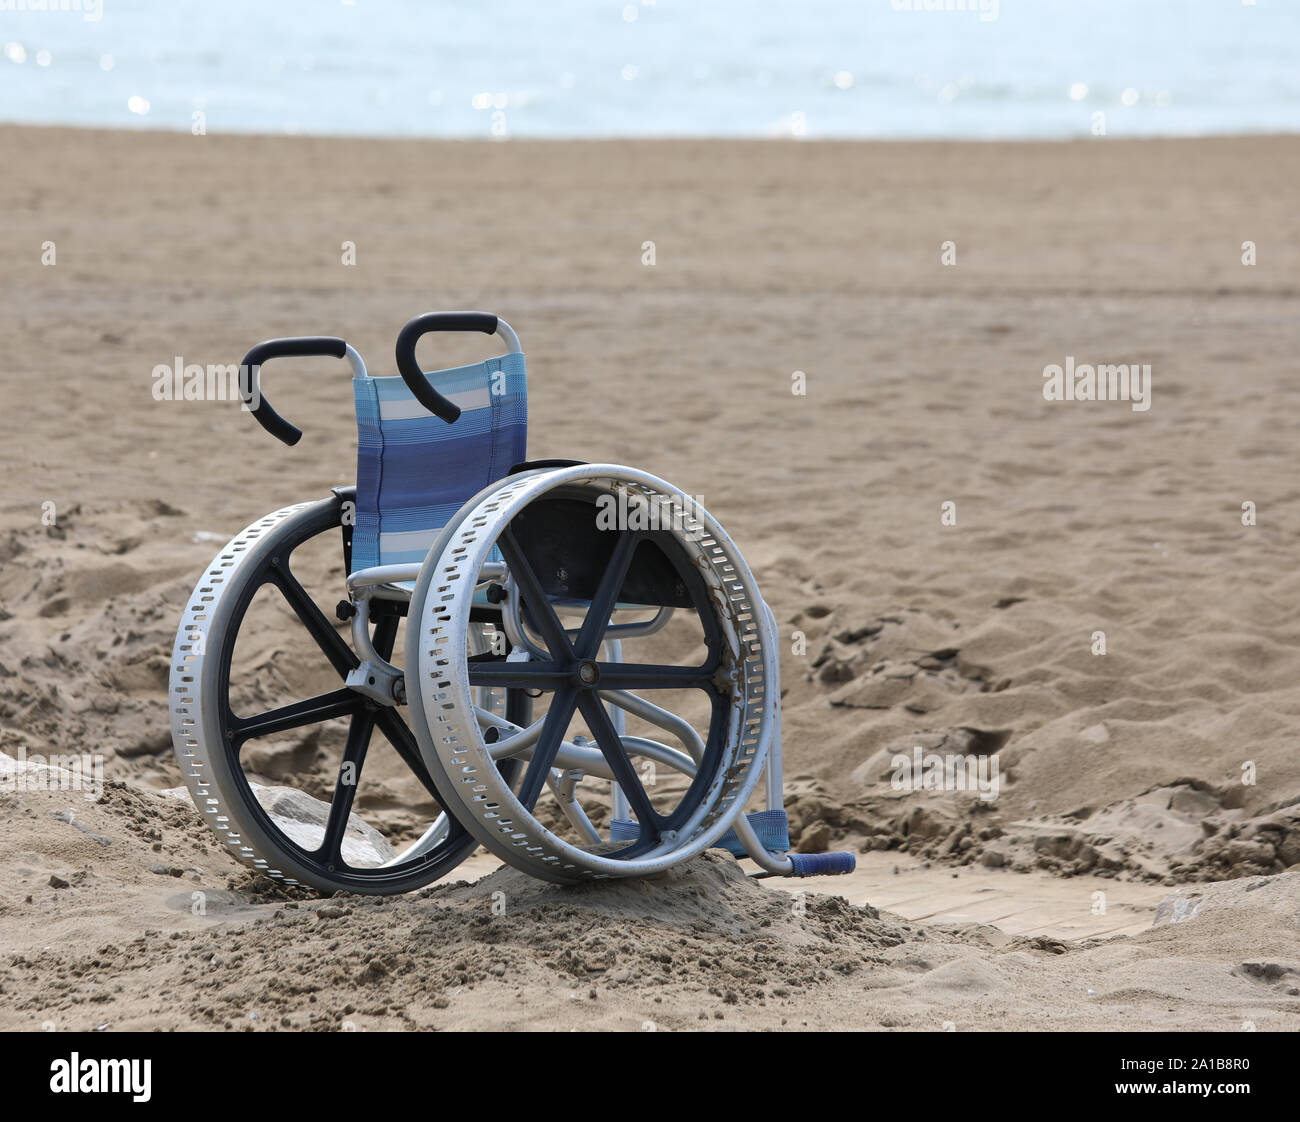 Rollstuhl mit großen Metall Räder auf dem Strand im Sommer ohne Menschen  Stockfotografie - Alamy